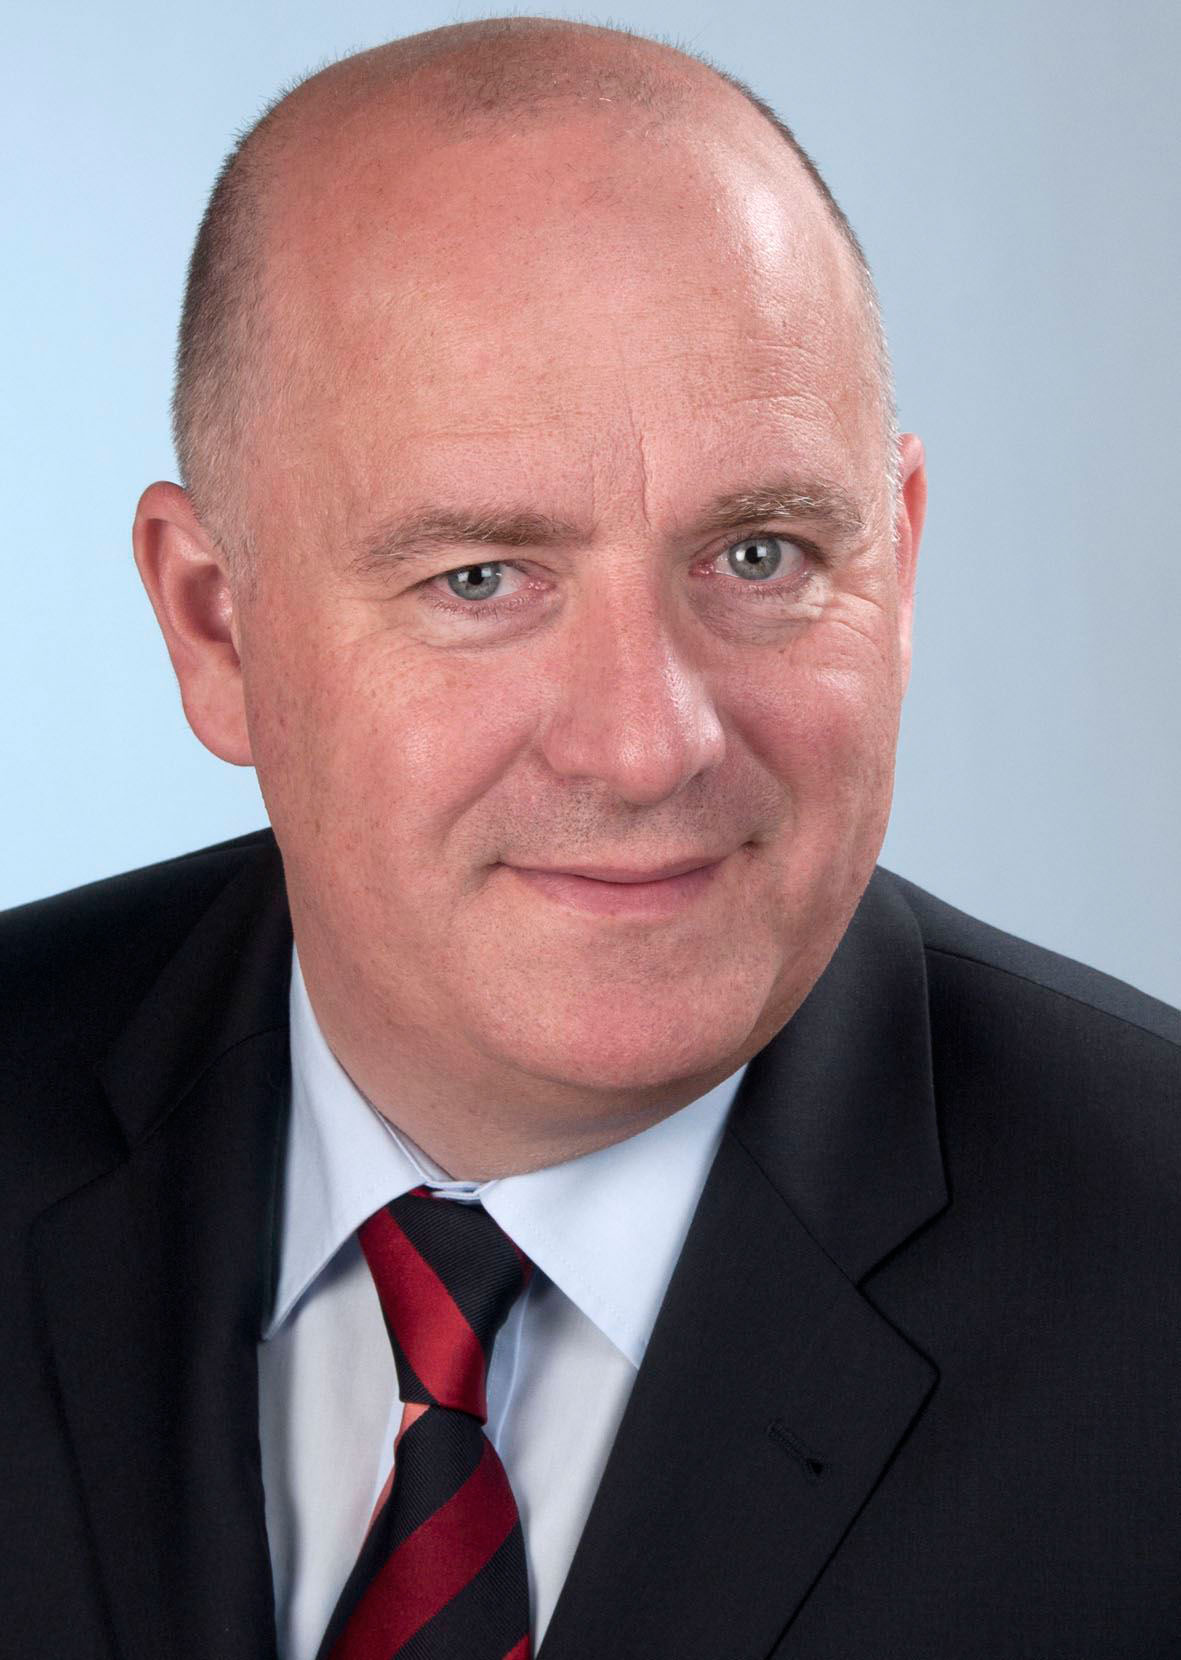 Helmut Weinwurm übernimmt am 1. Mai 2020 die Funktion des Alleinvorstandes der Robert Bosch AG und des Repräsentanten der Bosch-Gruppe in Österreich.